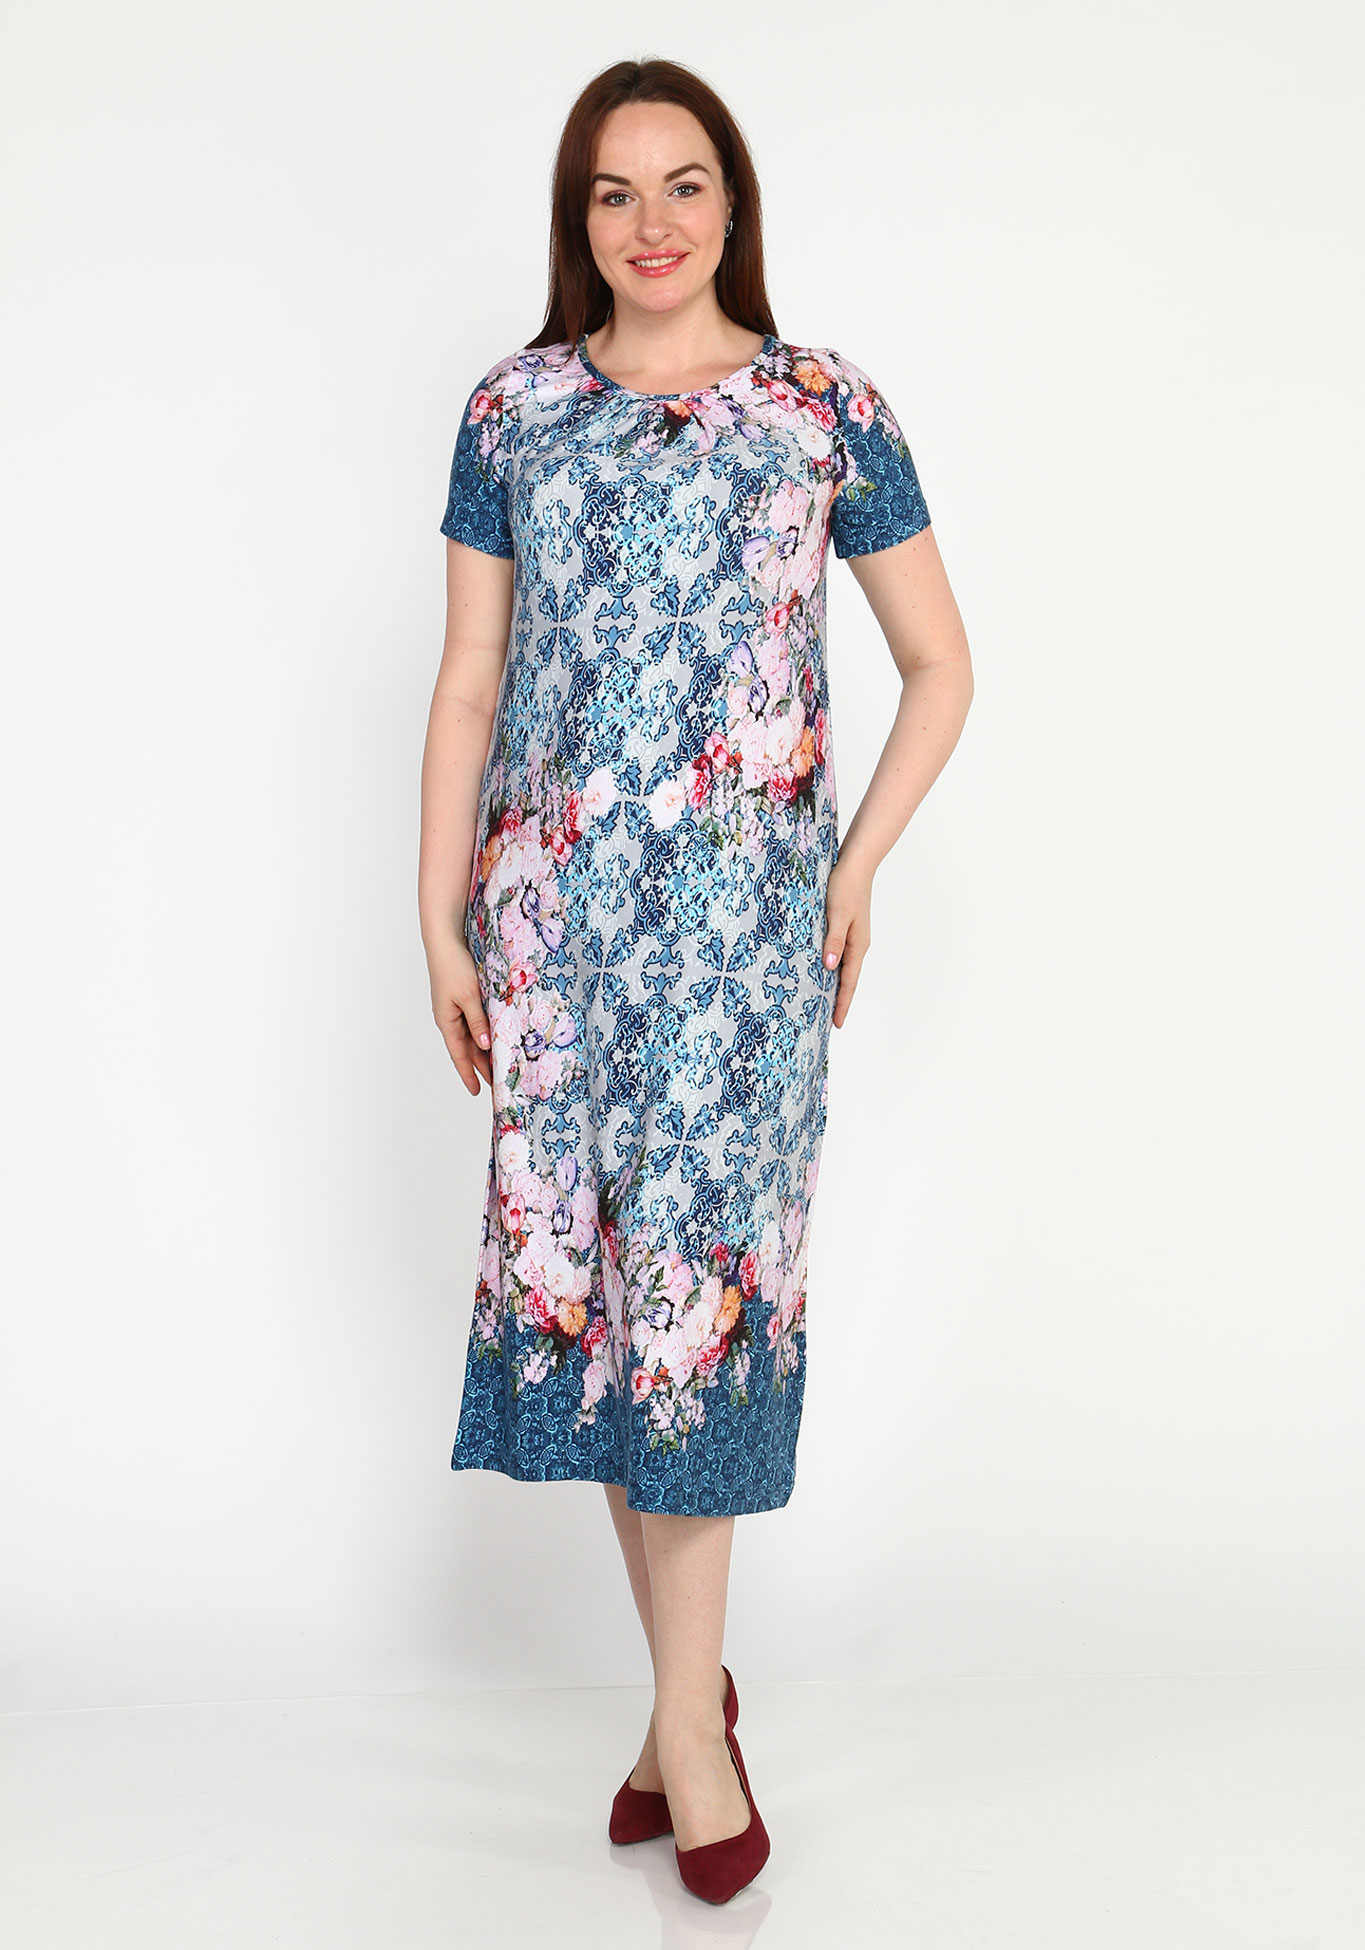 Платье прямое с принтом и короткими рукавами Синель, размер 46, цвет сине-розовый - фото 1